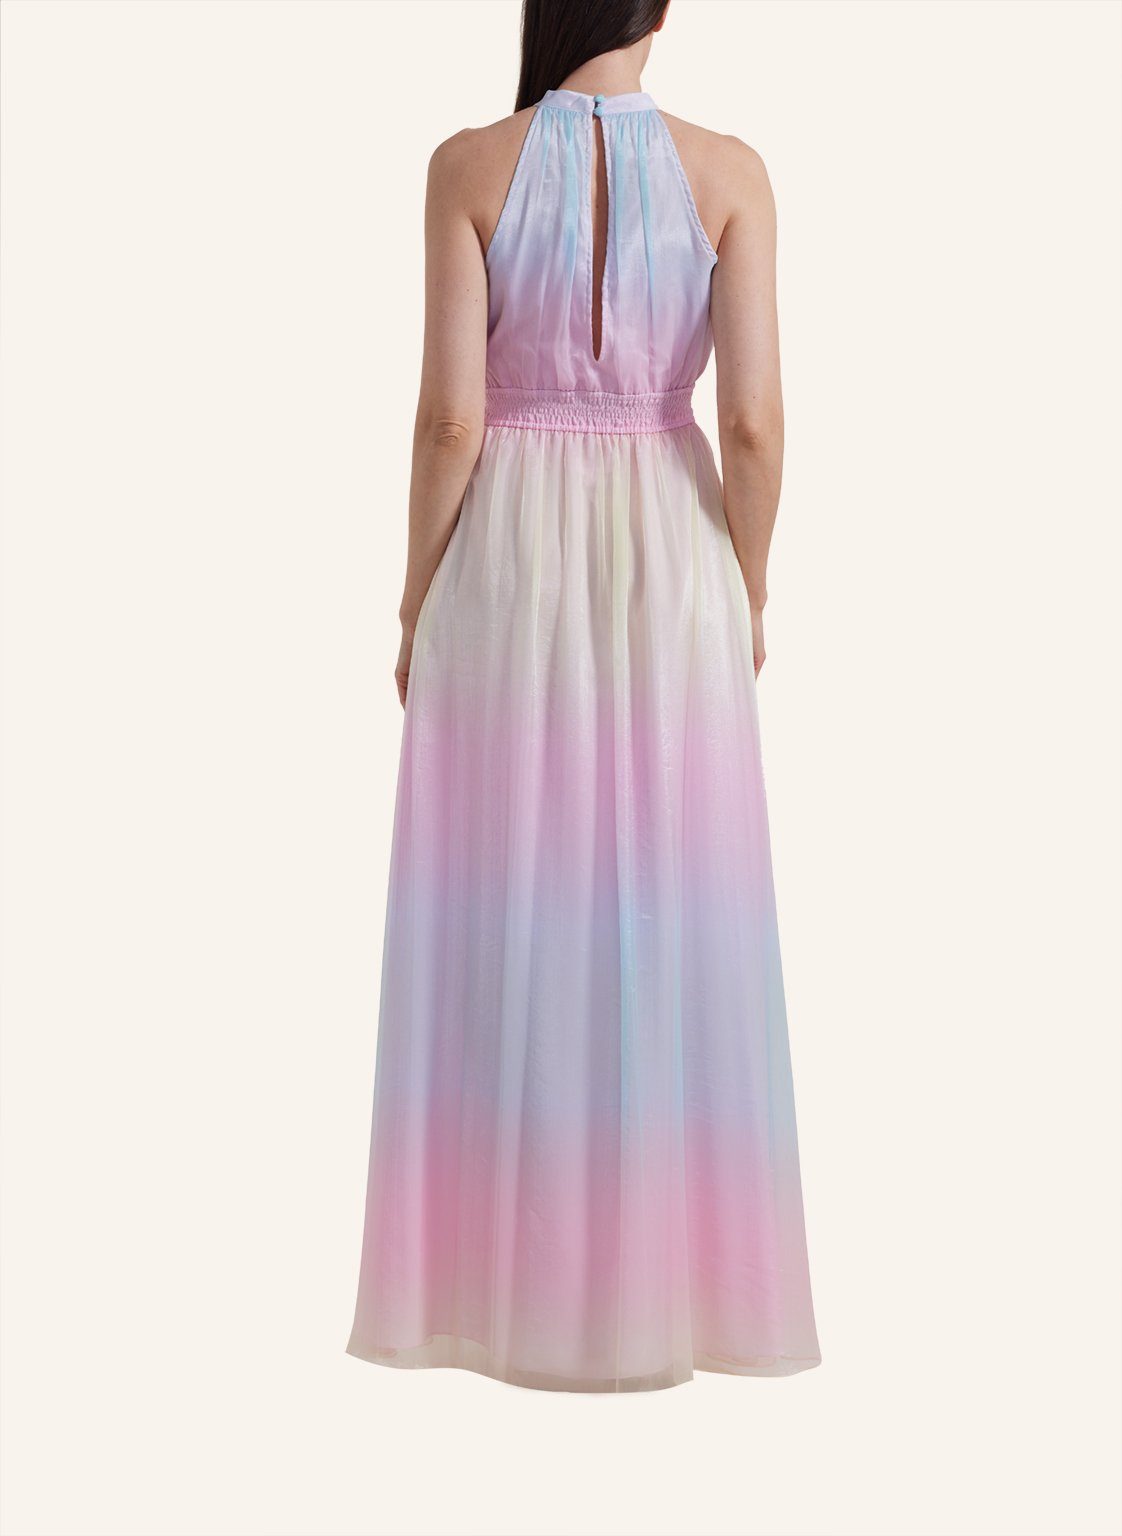 PRISMA DRESS Unique Abendkleid